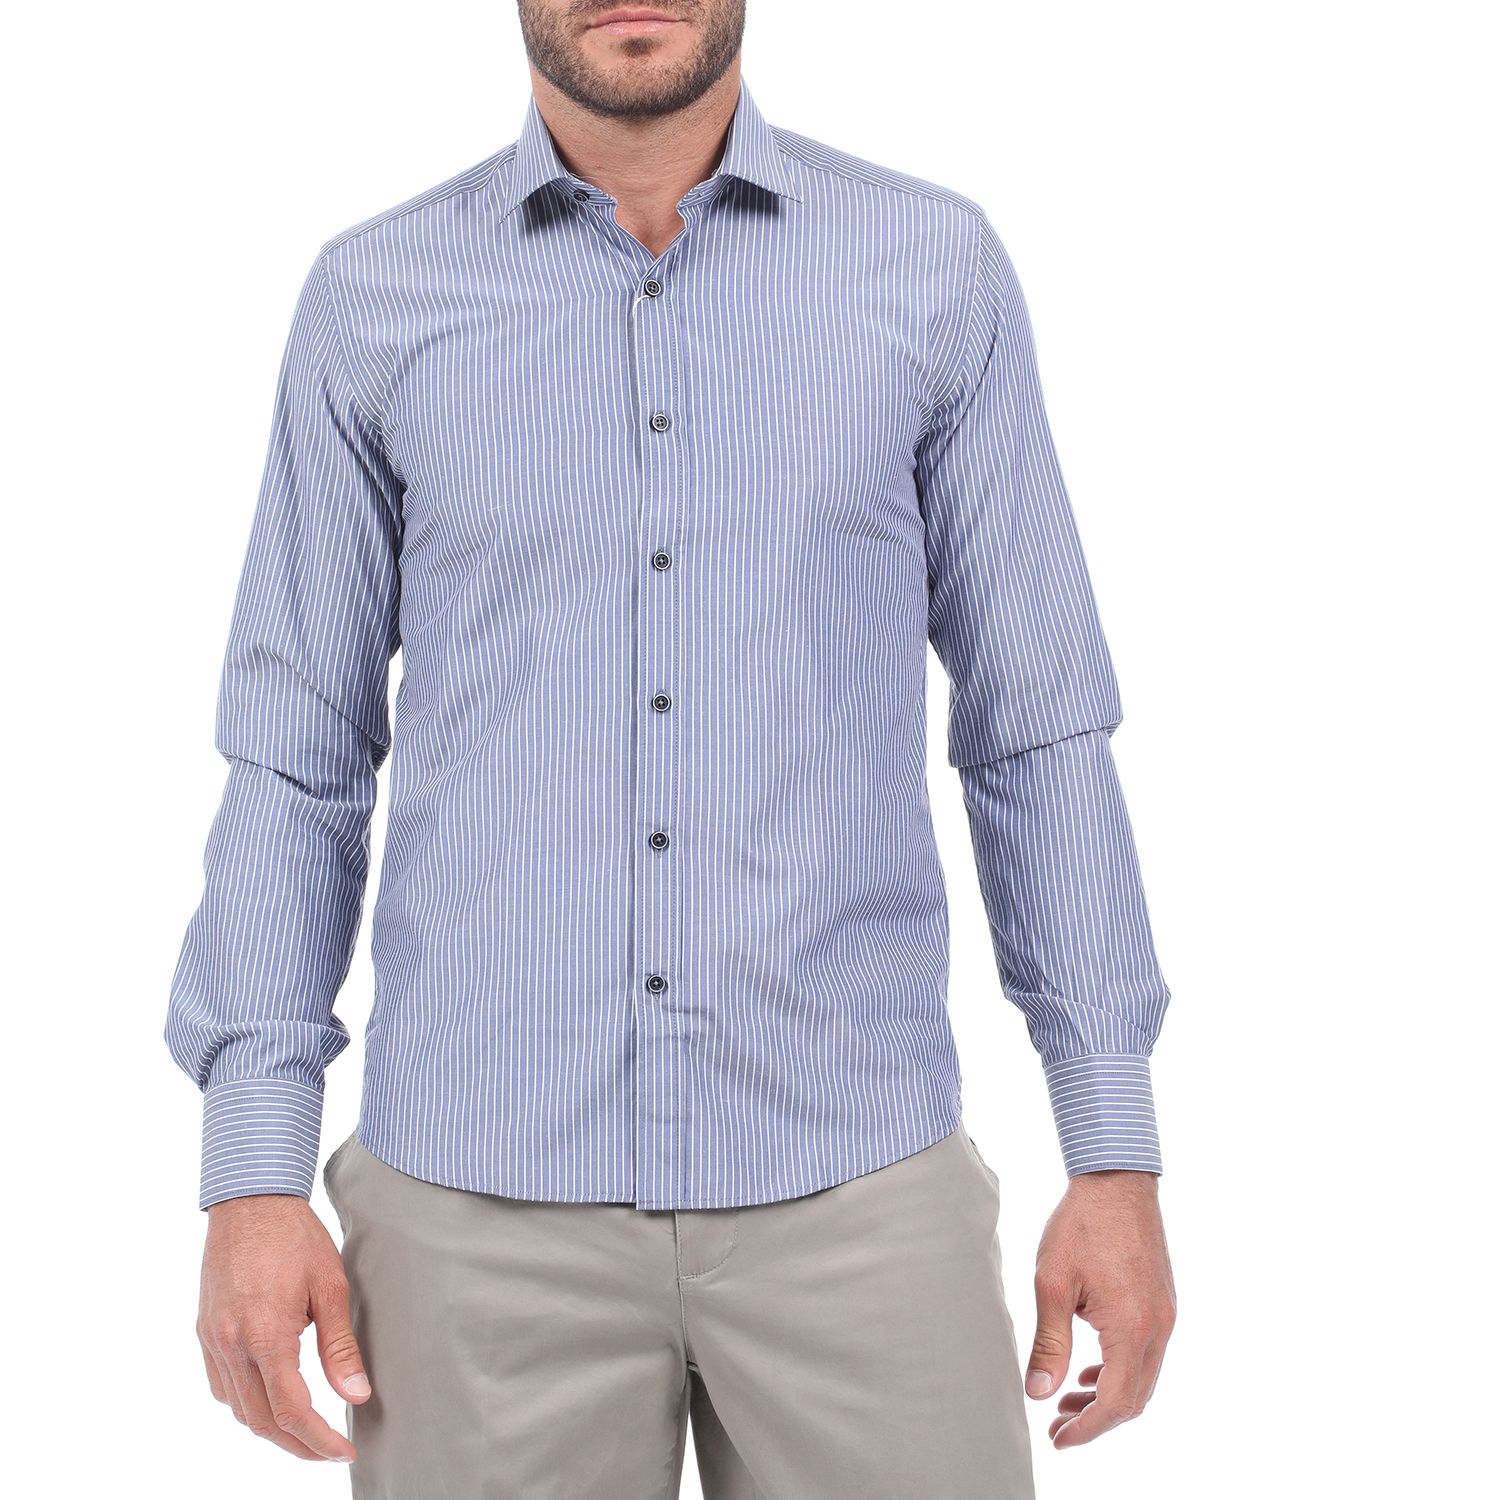 Ανδρικά/Ρούχα/Πουκάμισα/Μακρυμάνικα MARTIN & CO - Ανδρικό πουκάμισο MARTIN & CO SLIM FIT μπλε λευκό